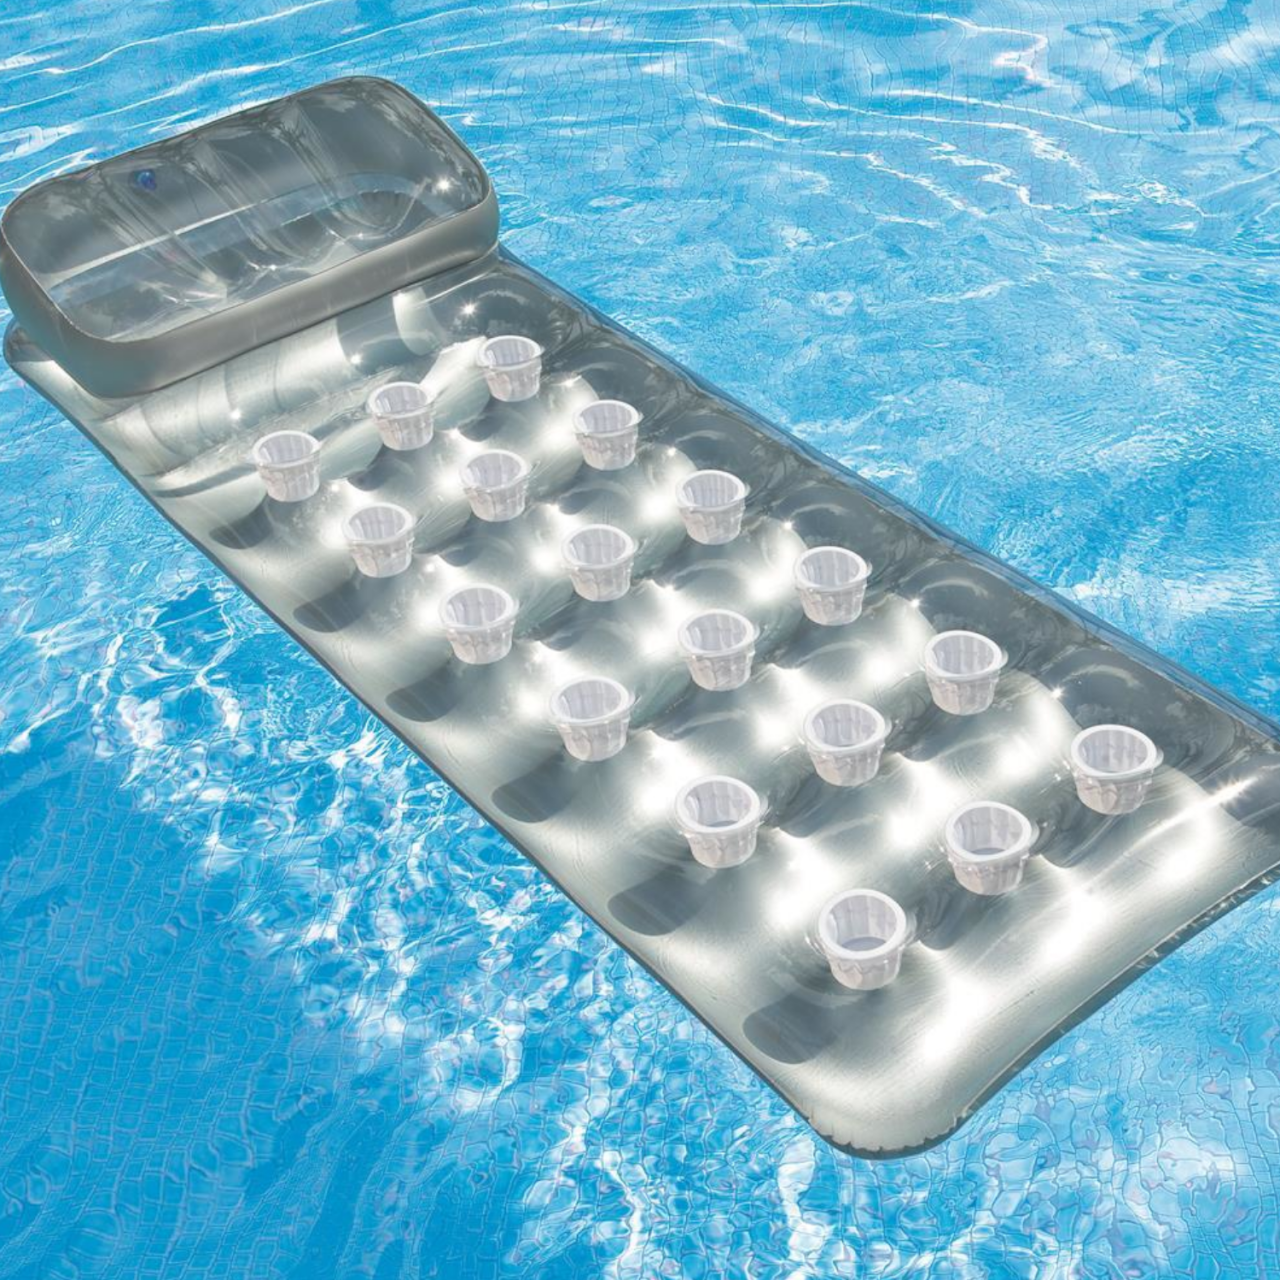 Intex Luftmatratze Schwimmliege Pocket transparent 188 x 71 cm 58894 aufblasbar